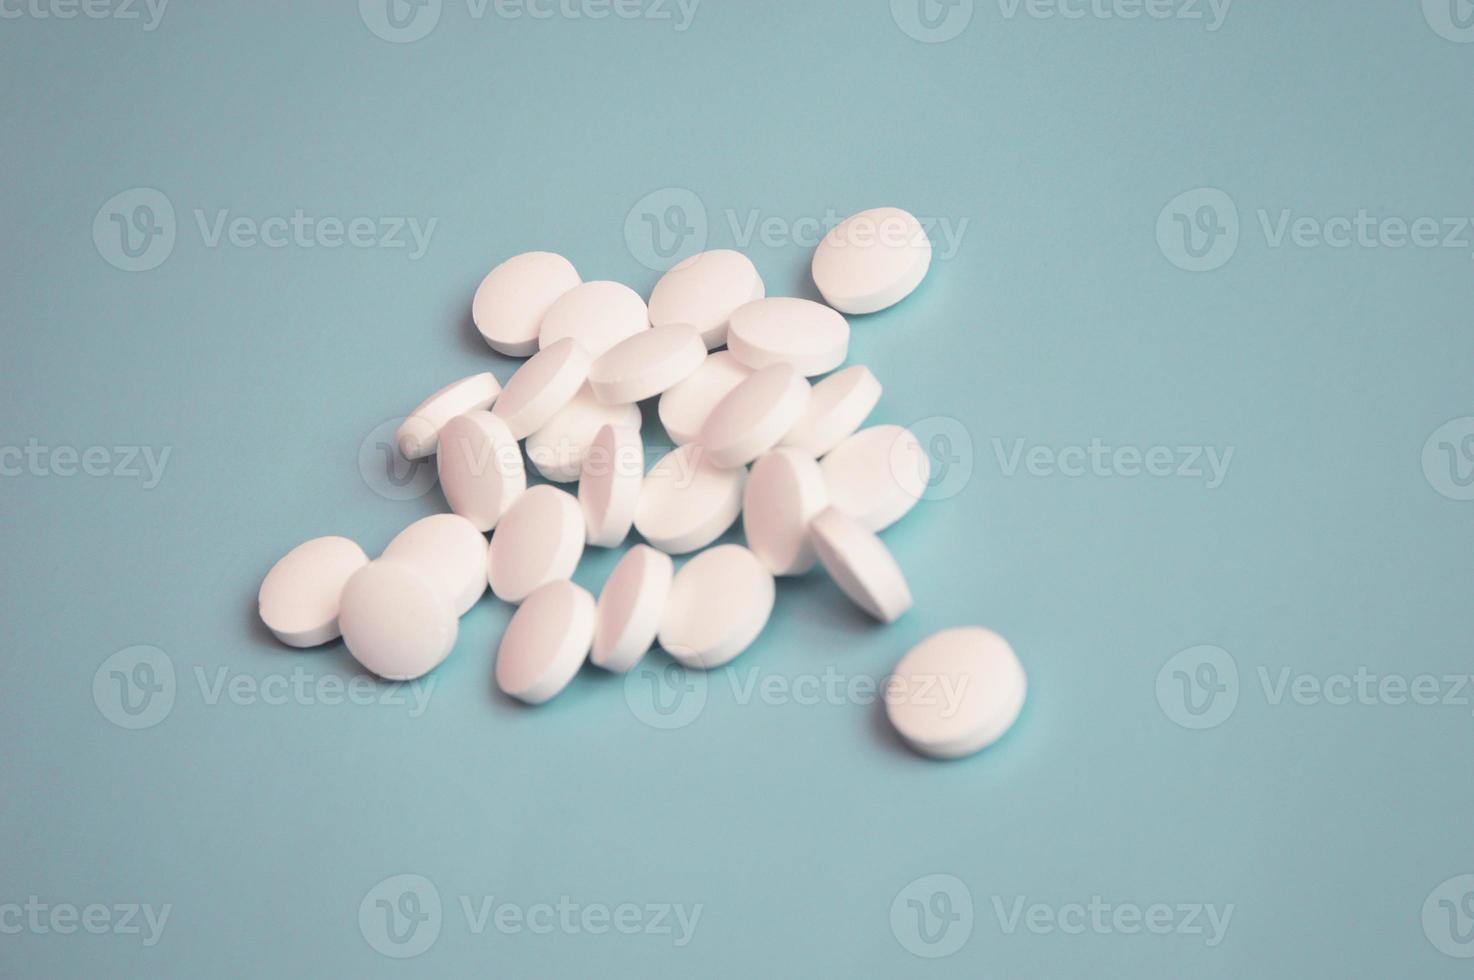 des pilules médicales blanches en vrac se trouvent sur un fond turquoise clair. notion de soins de santé. médicaments, bioadditifs. industrie pharmaceutique. photo